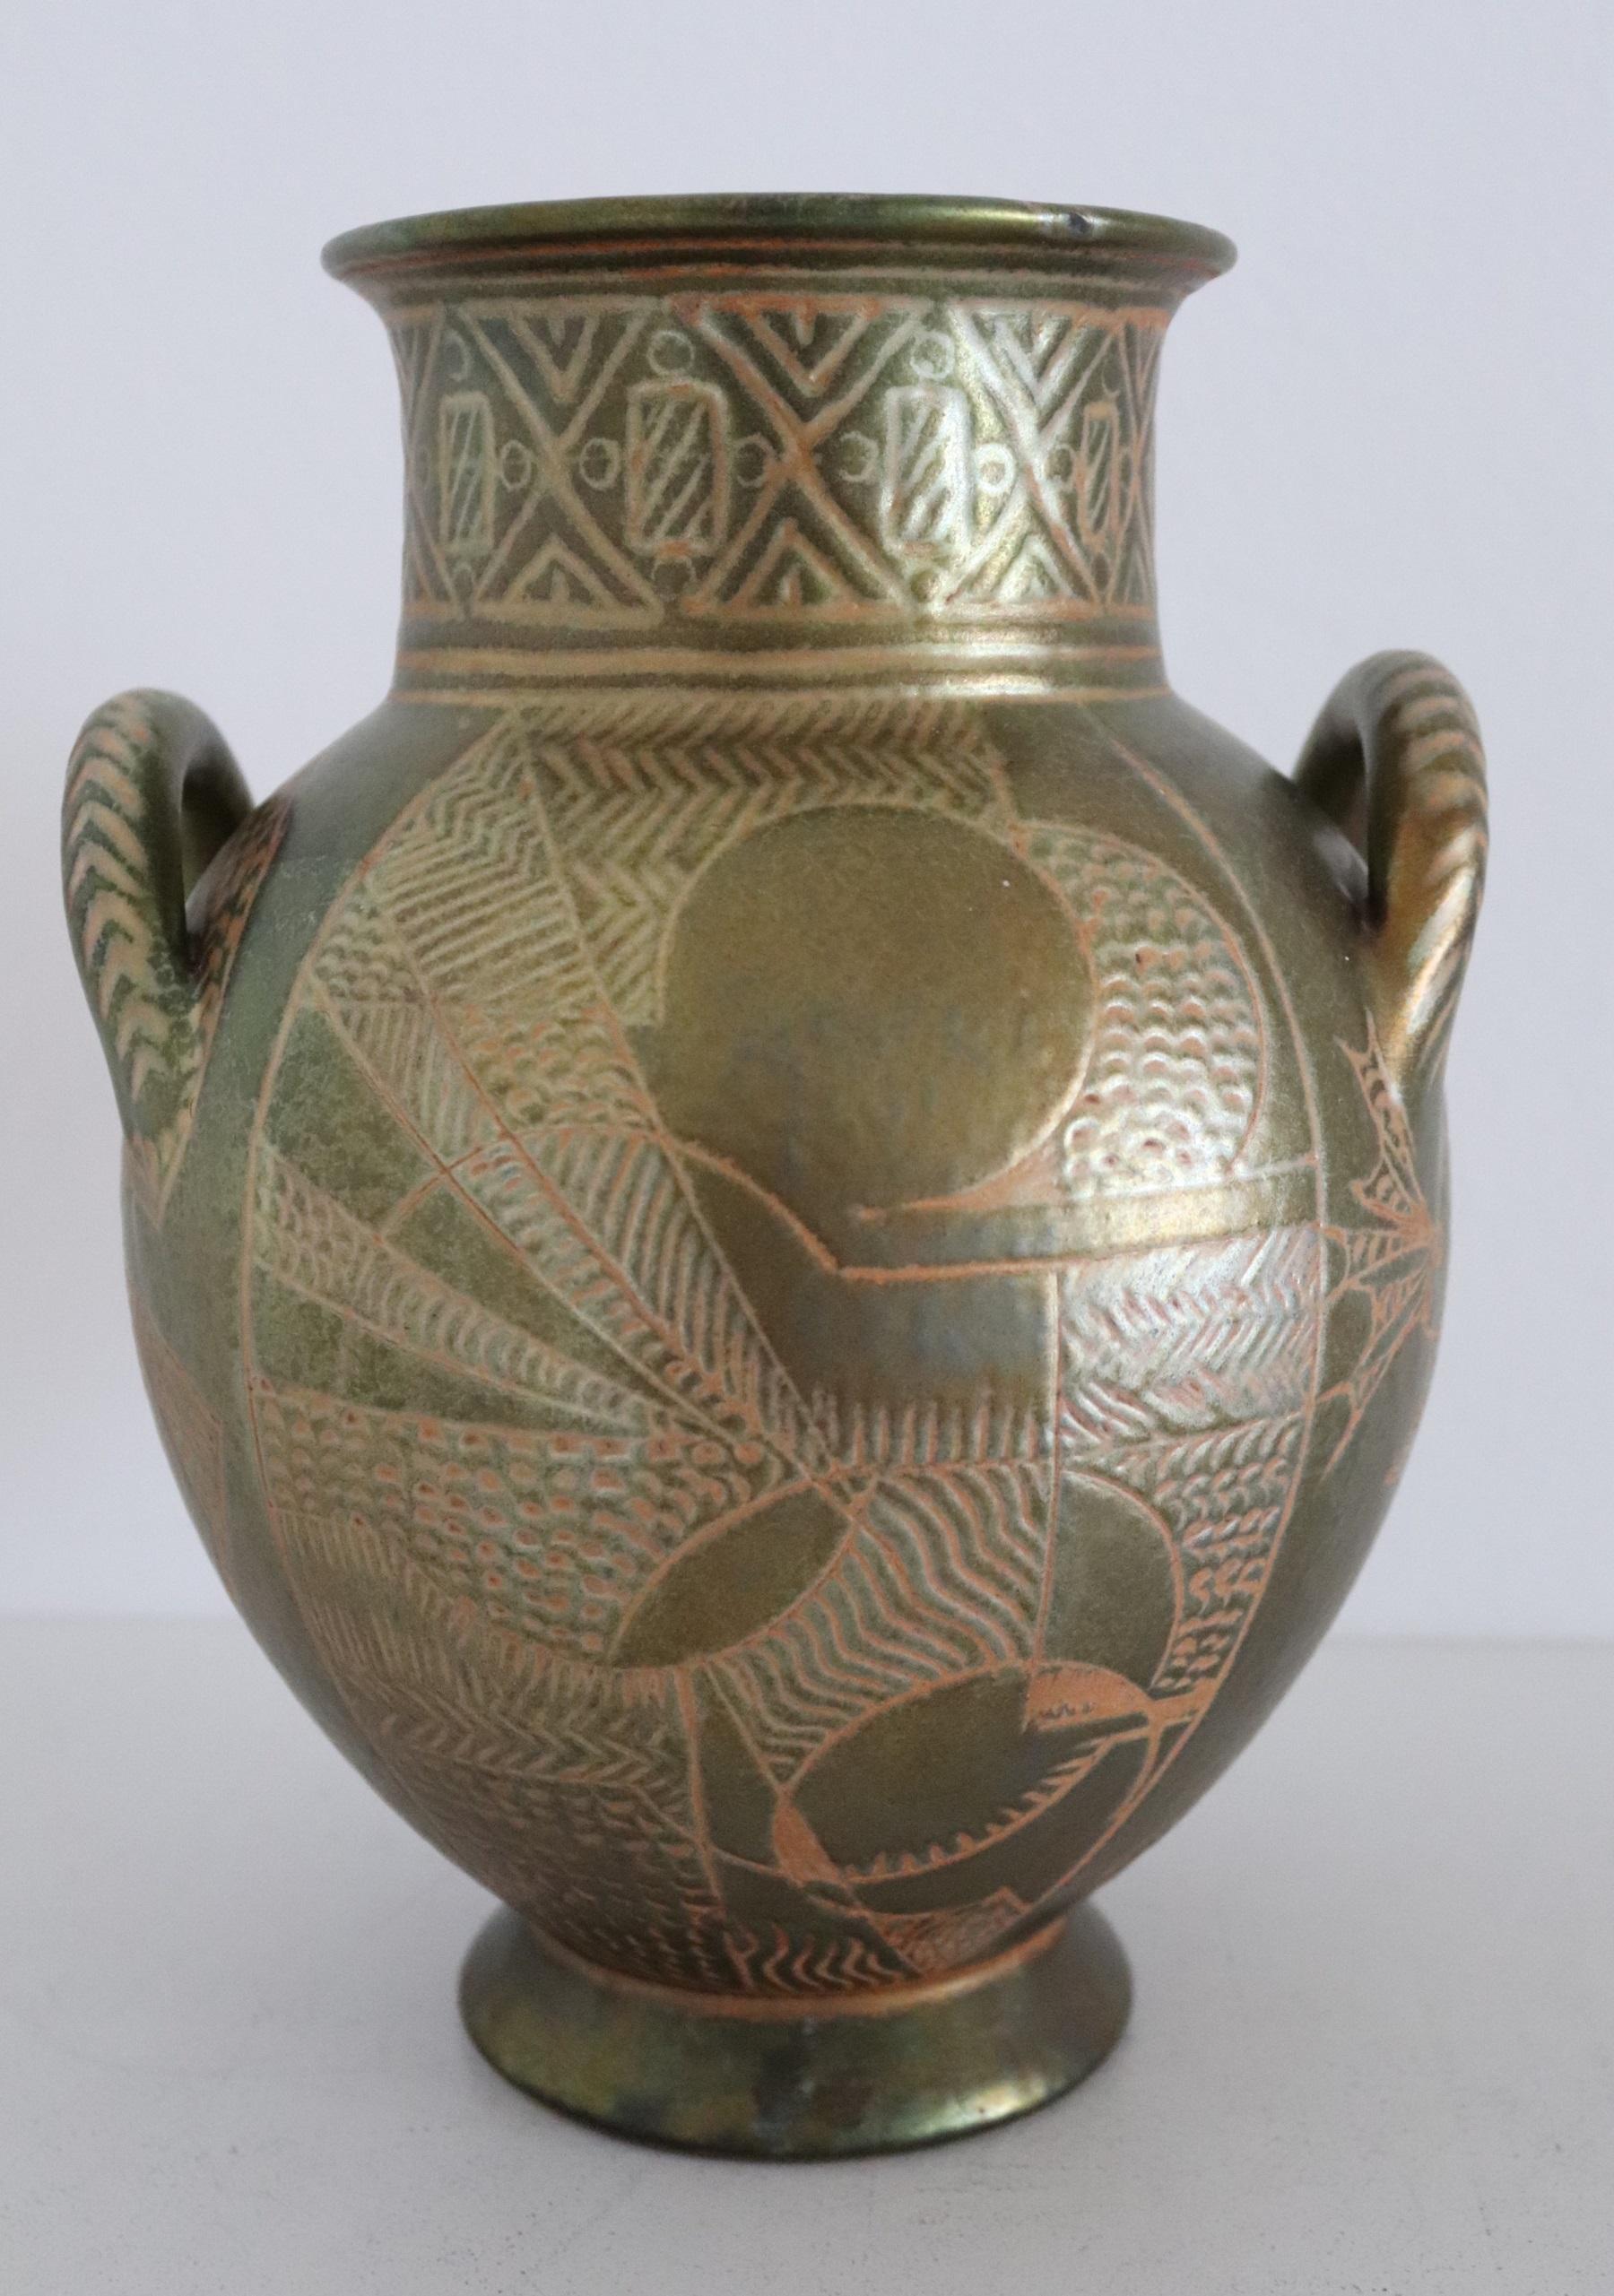 Schöne, einzigartige Keramikvase von Bottega Gatti in Faenza, wahrscheinlich in den 1950er Jahren oder früher.
Die Vase ist handbemalt, handgeschnitzt und glasiert und zeigt auf jeder Seite andere Motive.
Schöner Schimmer des 